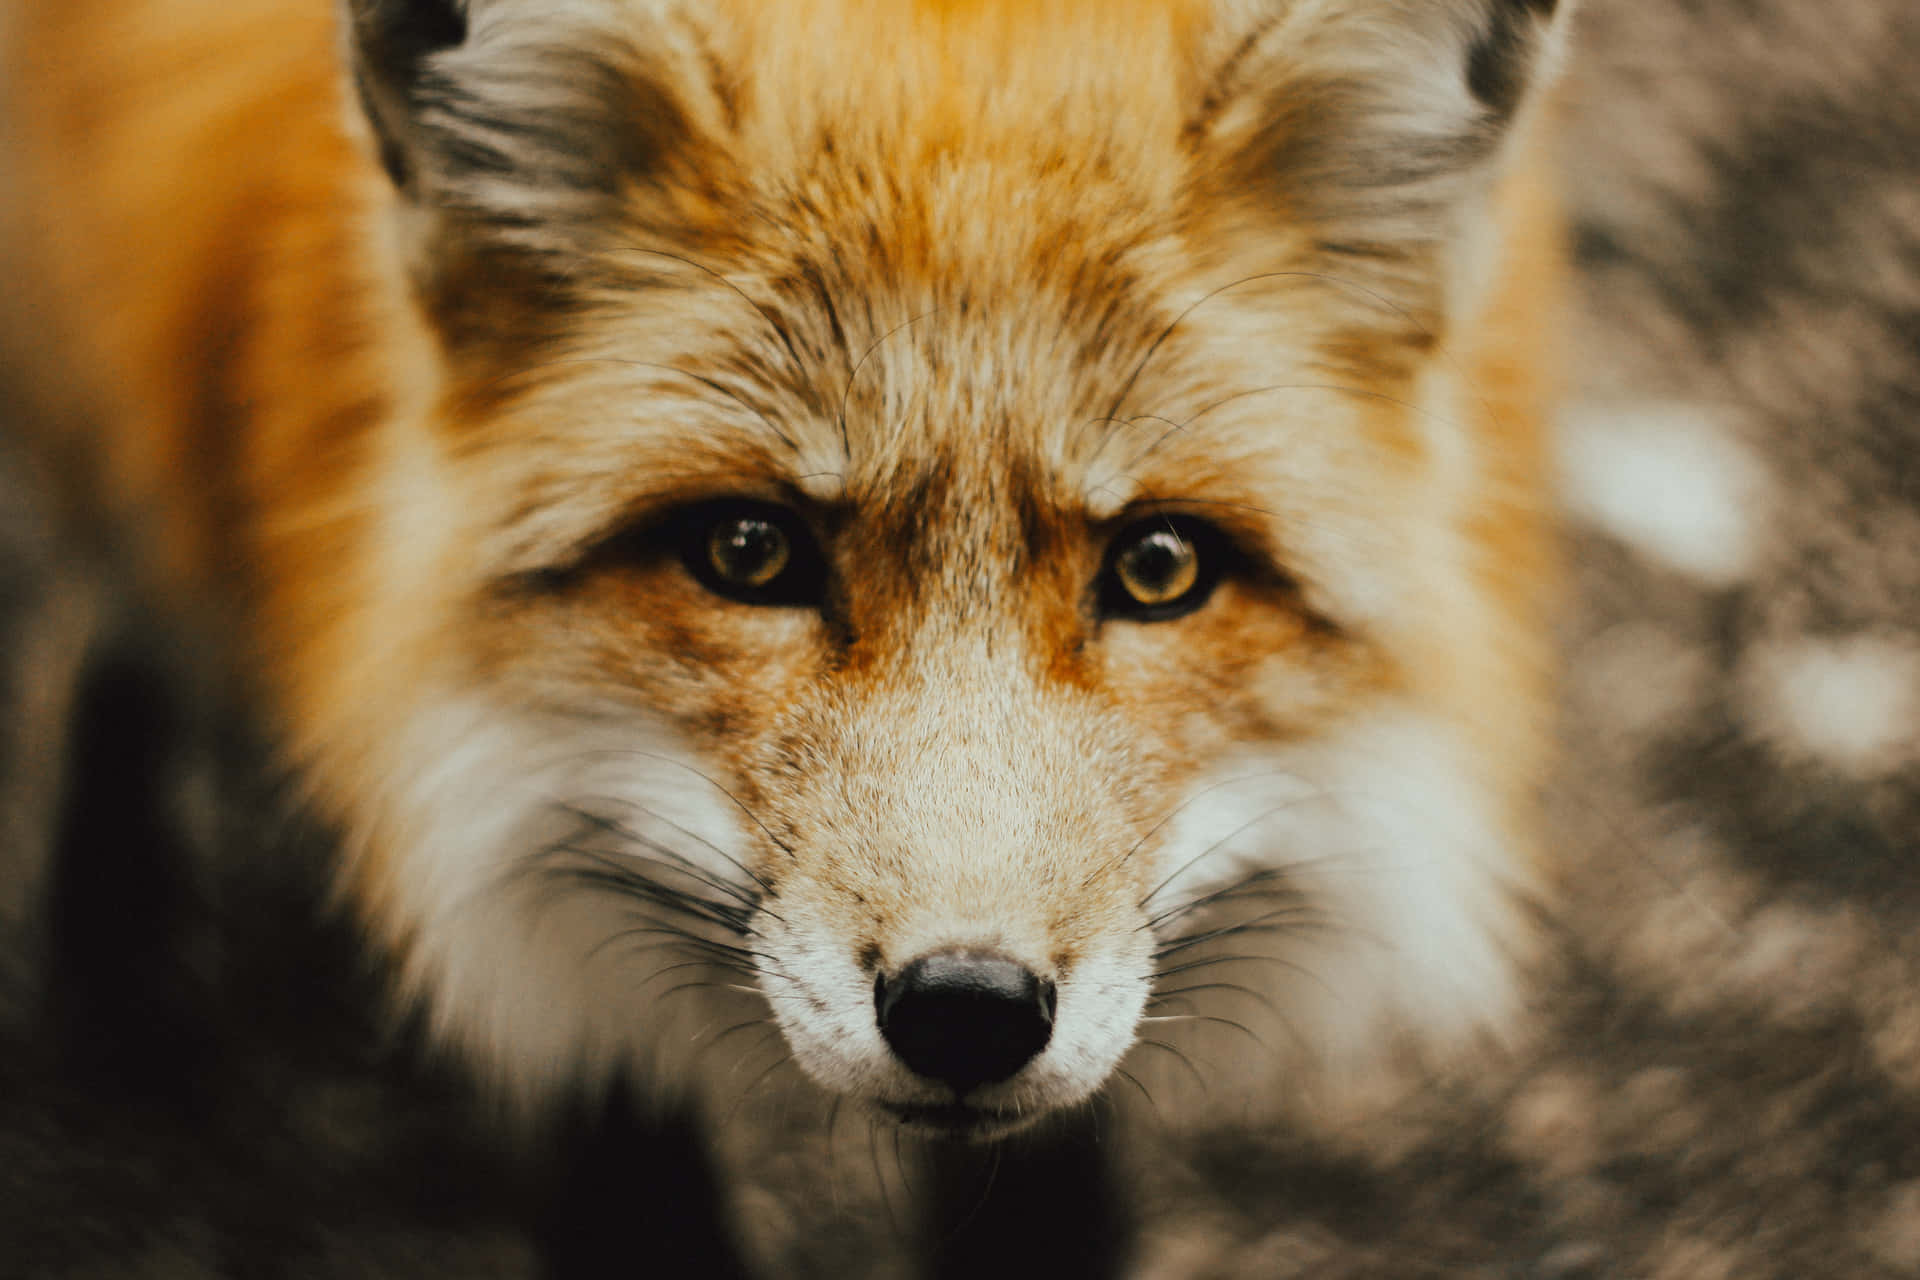 A Fox in its Natural Habitat